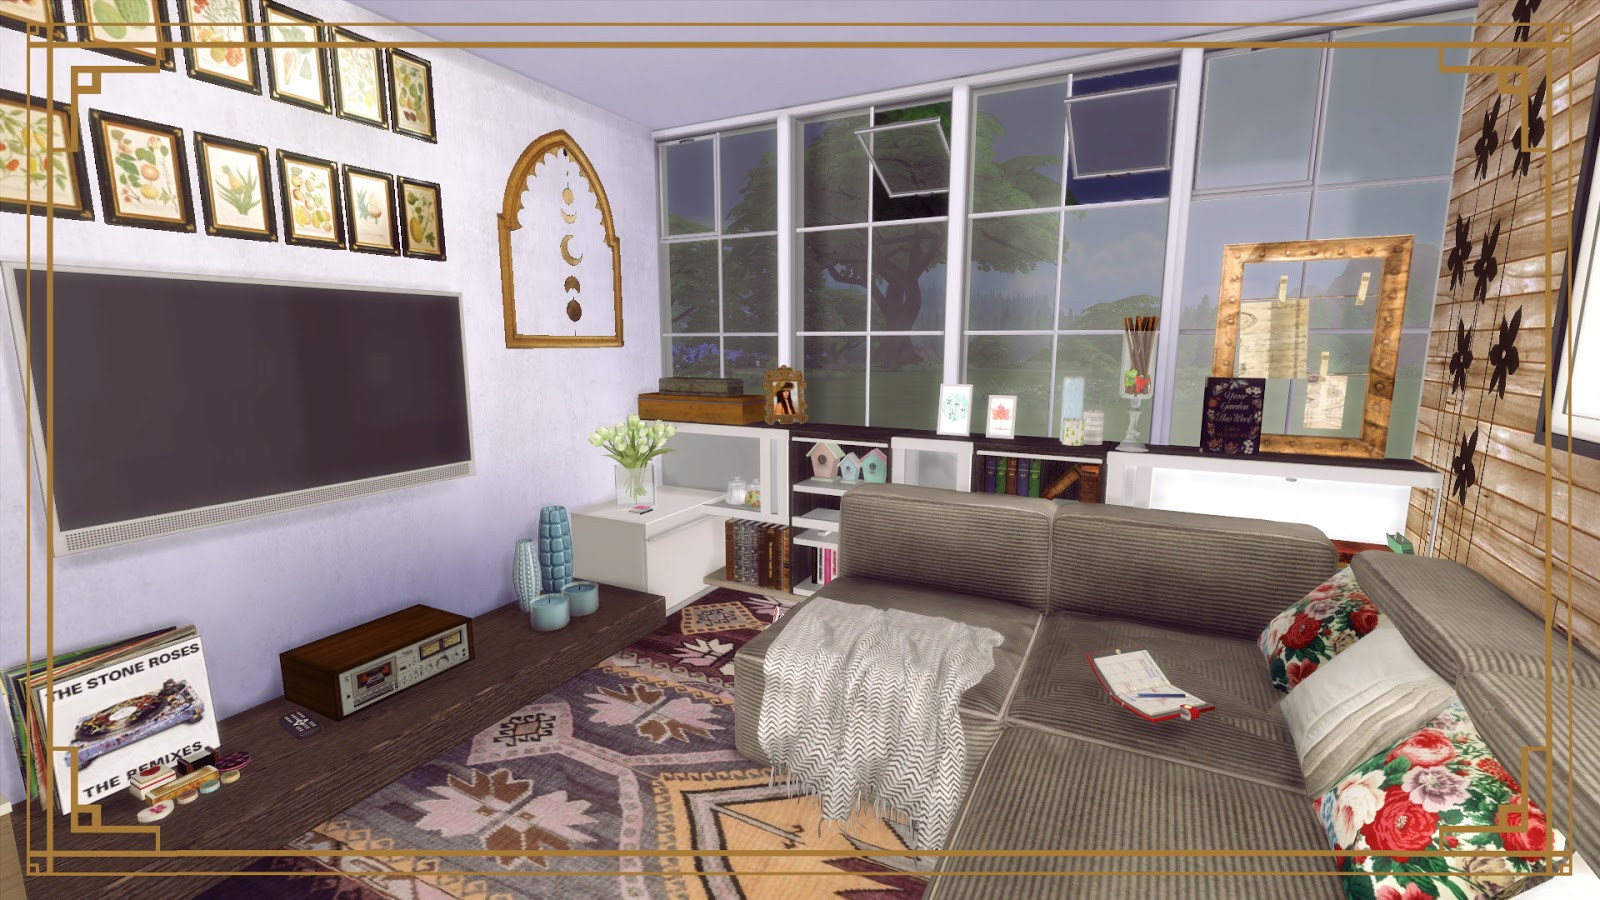 Sims 4 Living Room Ideas
 Sims 4 Cozy Living Room II Dinha